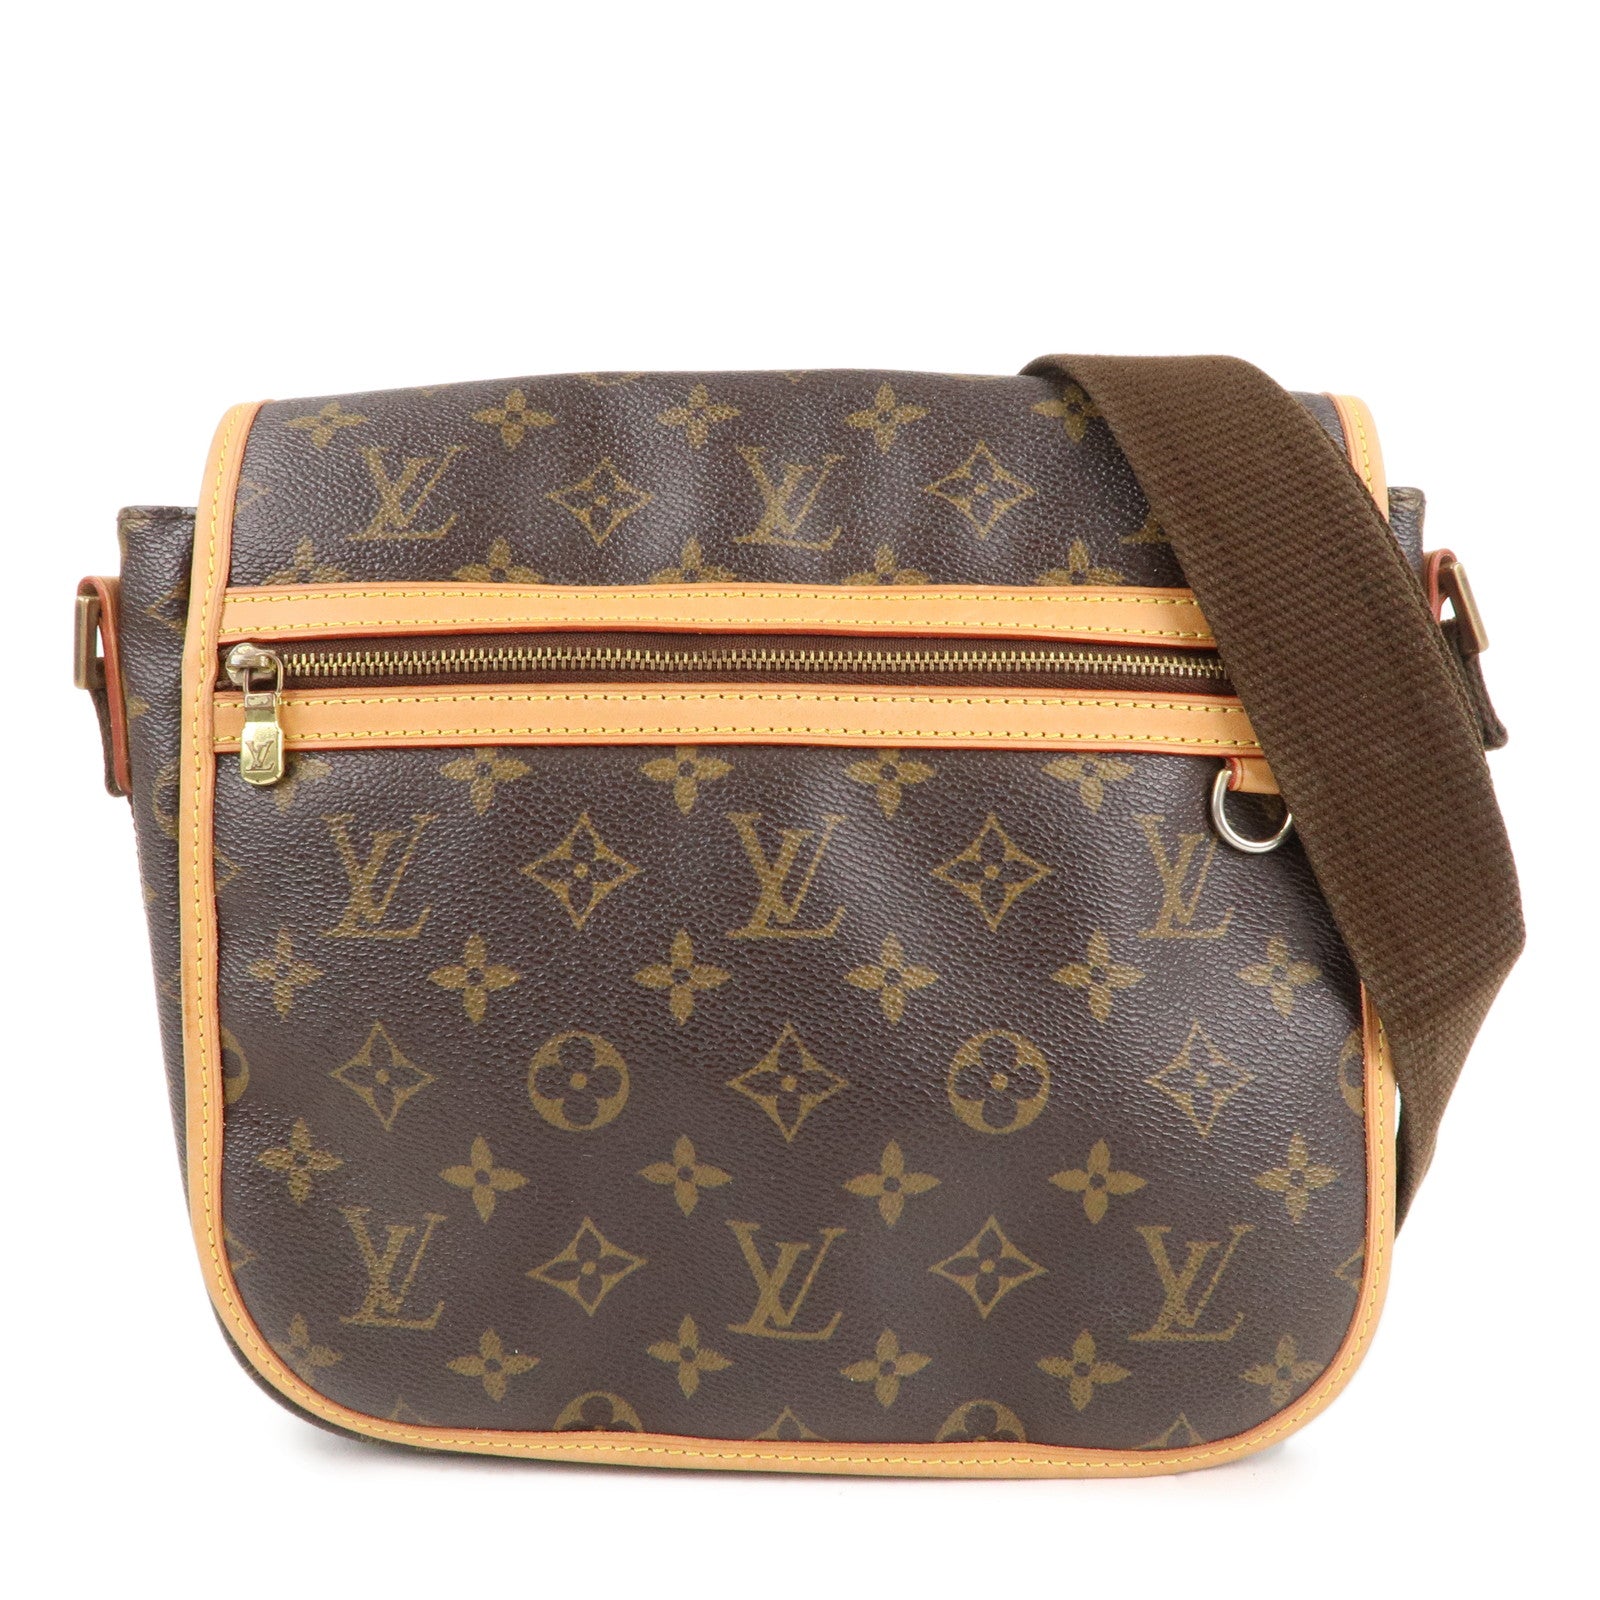 Louis Vuitton Open Messenger Bags for Women